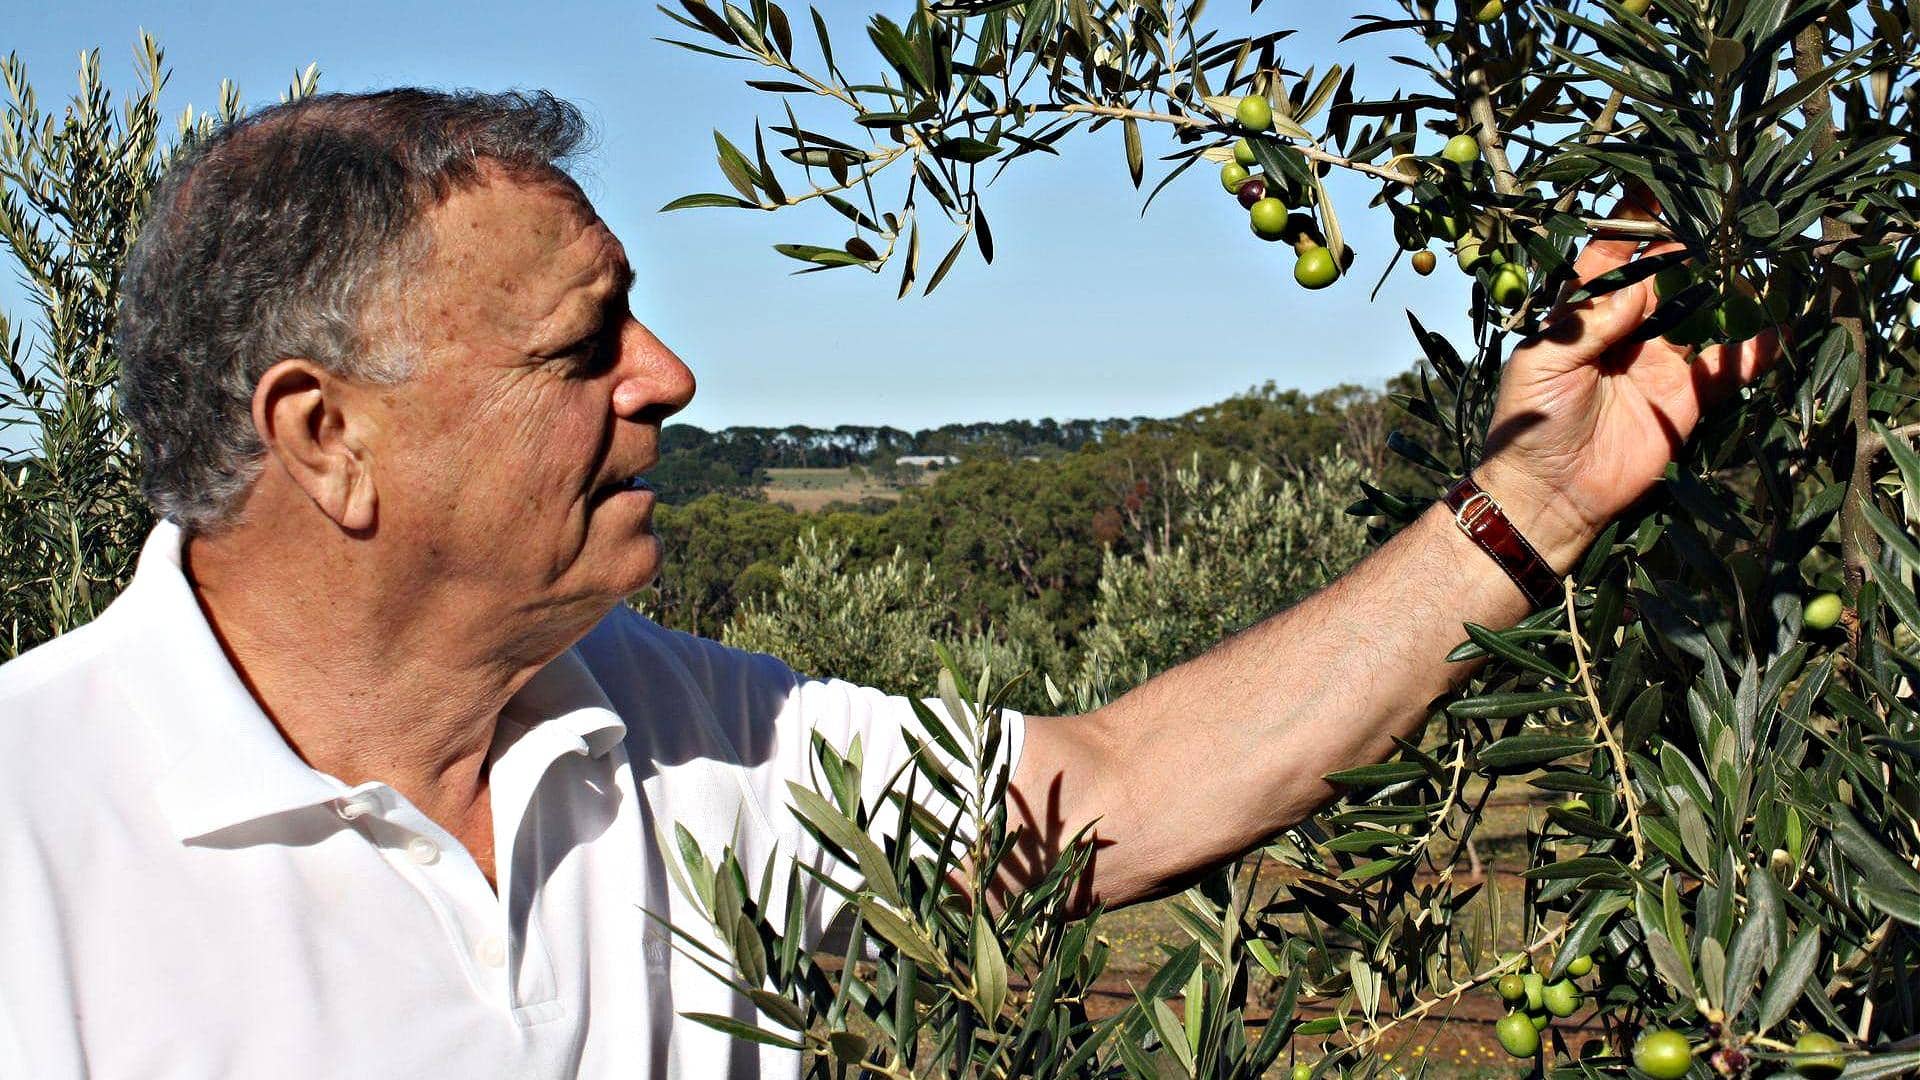 Австралия-и-Новая-Зеландия-бизнес-профили-производство-в-Виктории-Таралинга-Эстейт-прославляет-традицию-при-охватывании-инноваций-времена оливкового масла